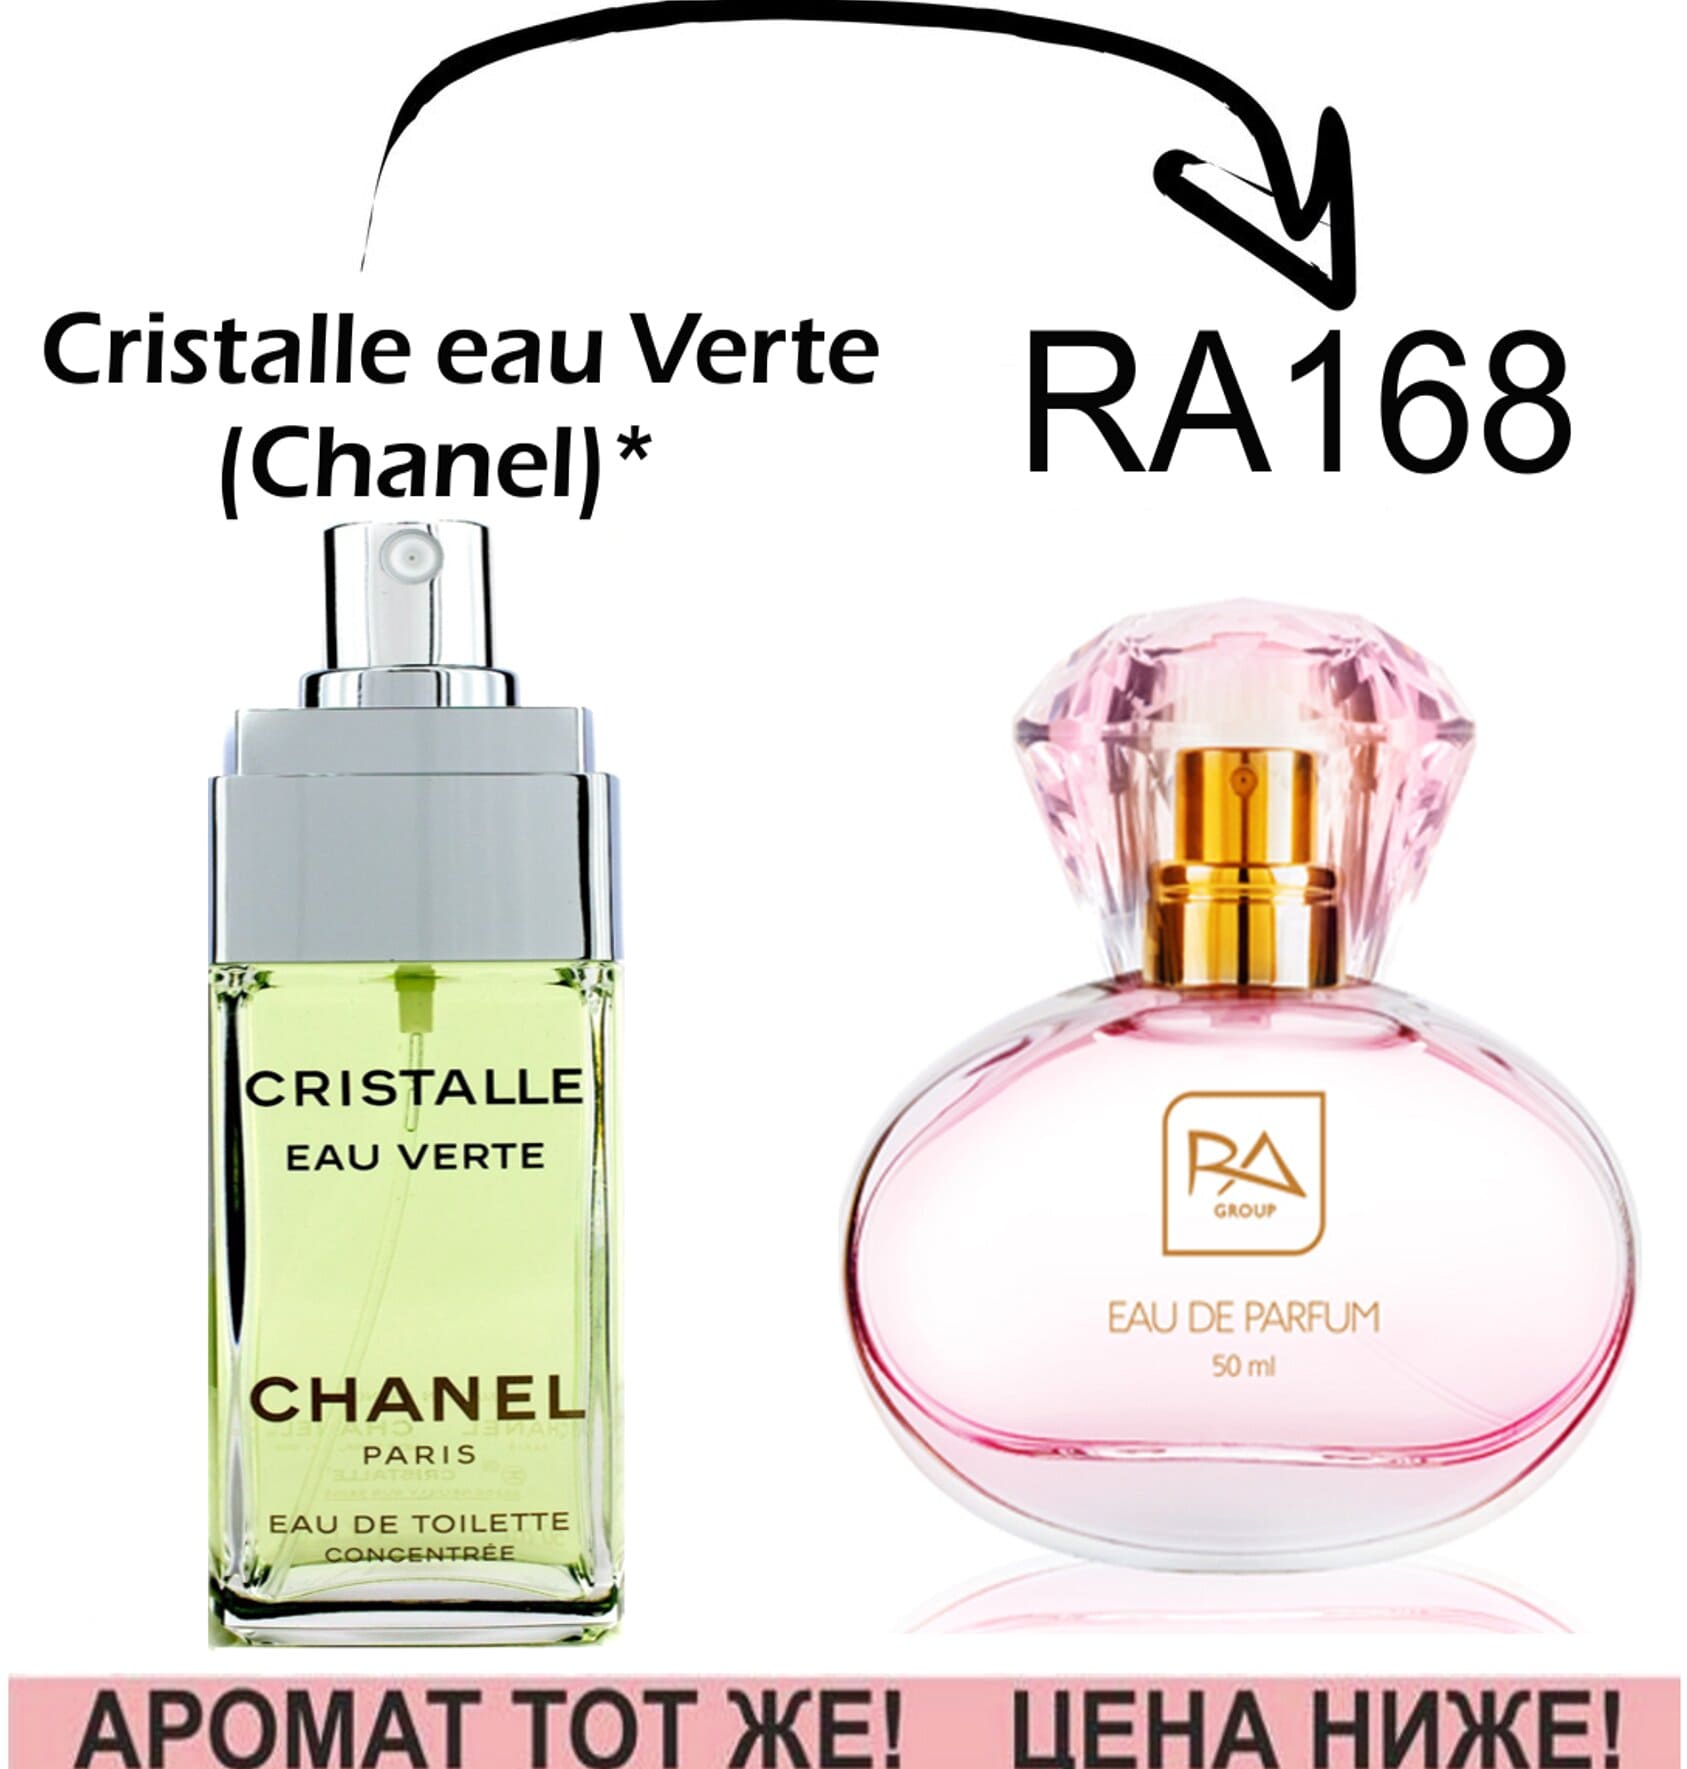 RA168 Cristalle eau Verte – Chanel *